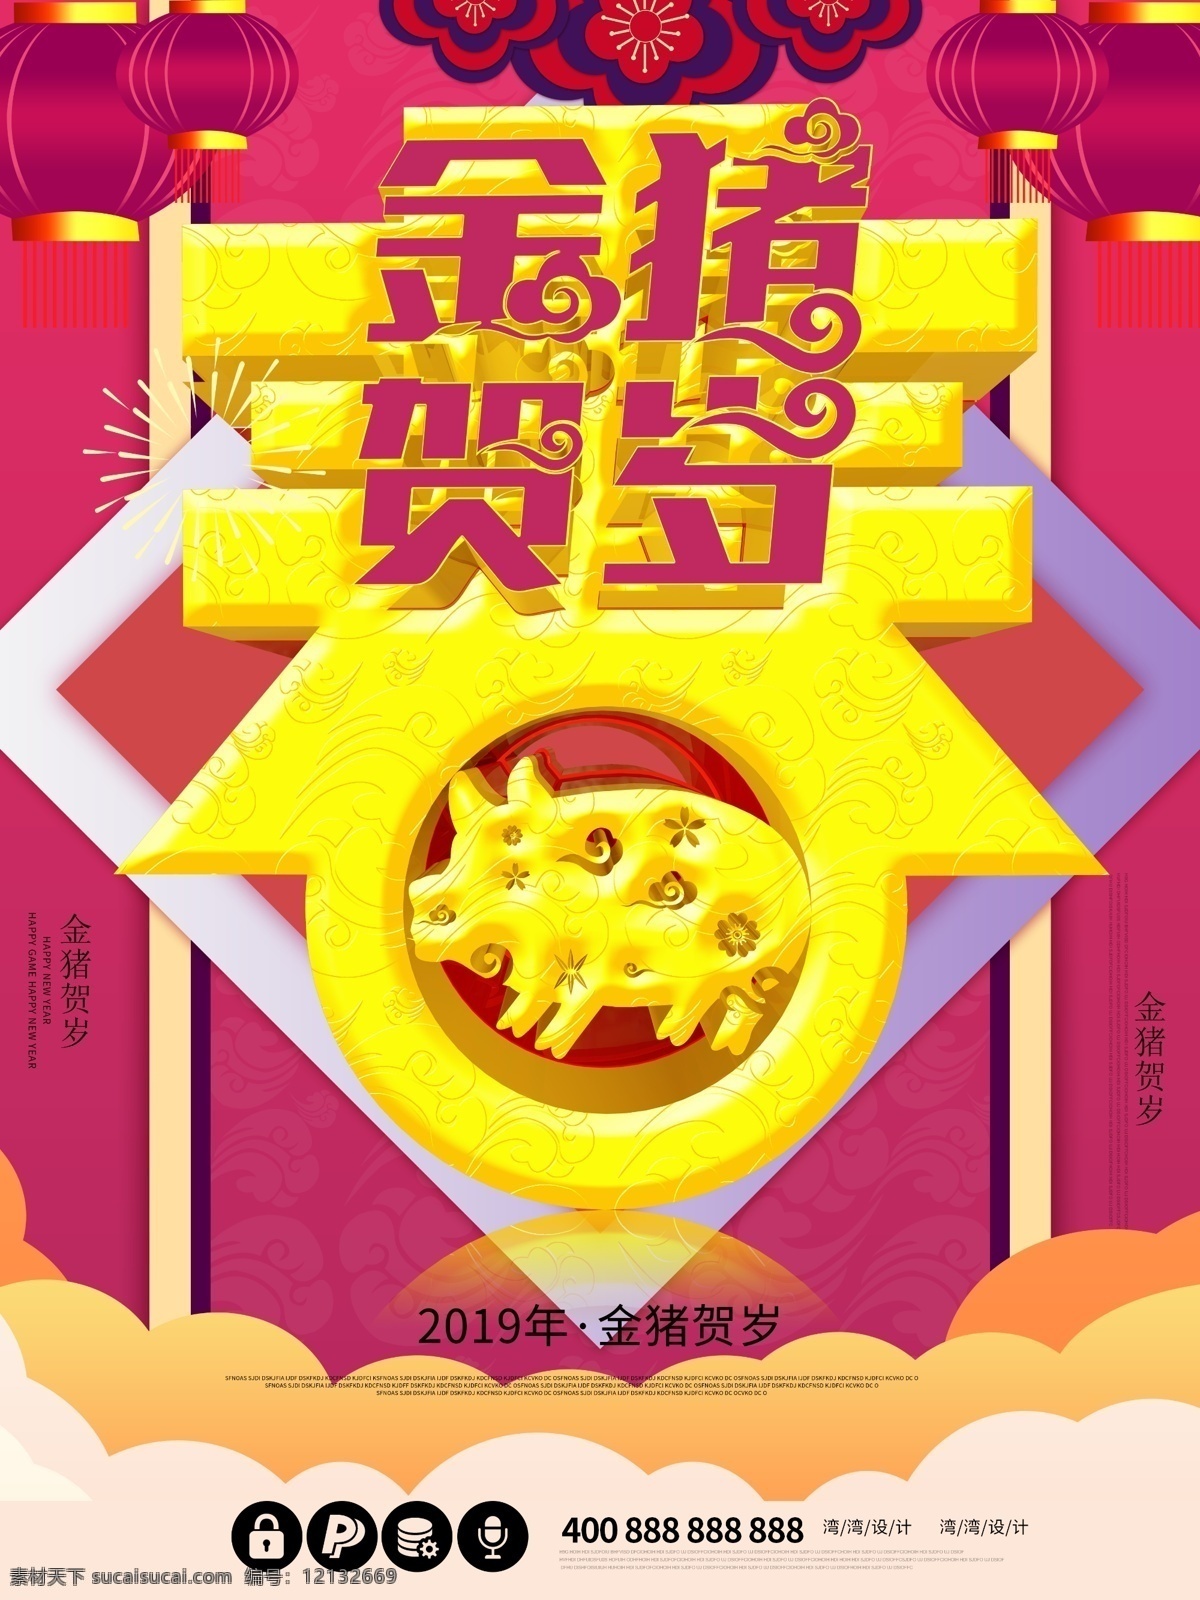 2019 年金 猪 贺岁 大气 原创 节日 春节 海报 2019年 金猪贺岁